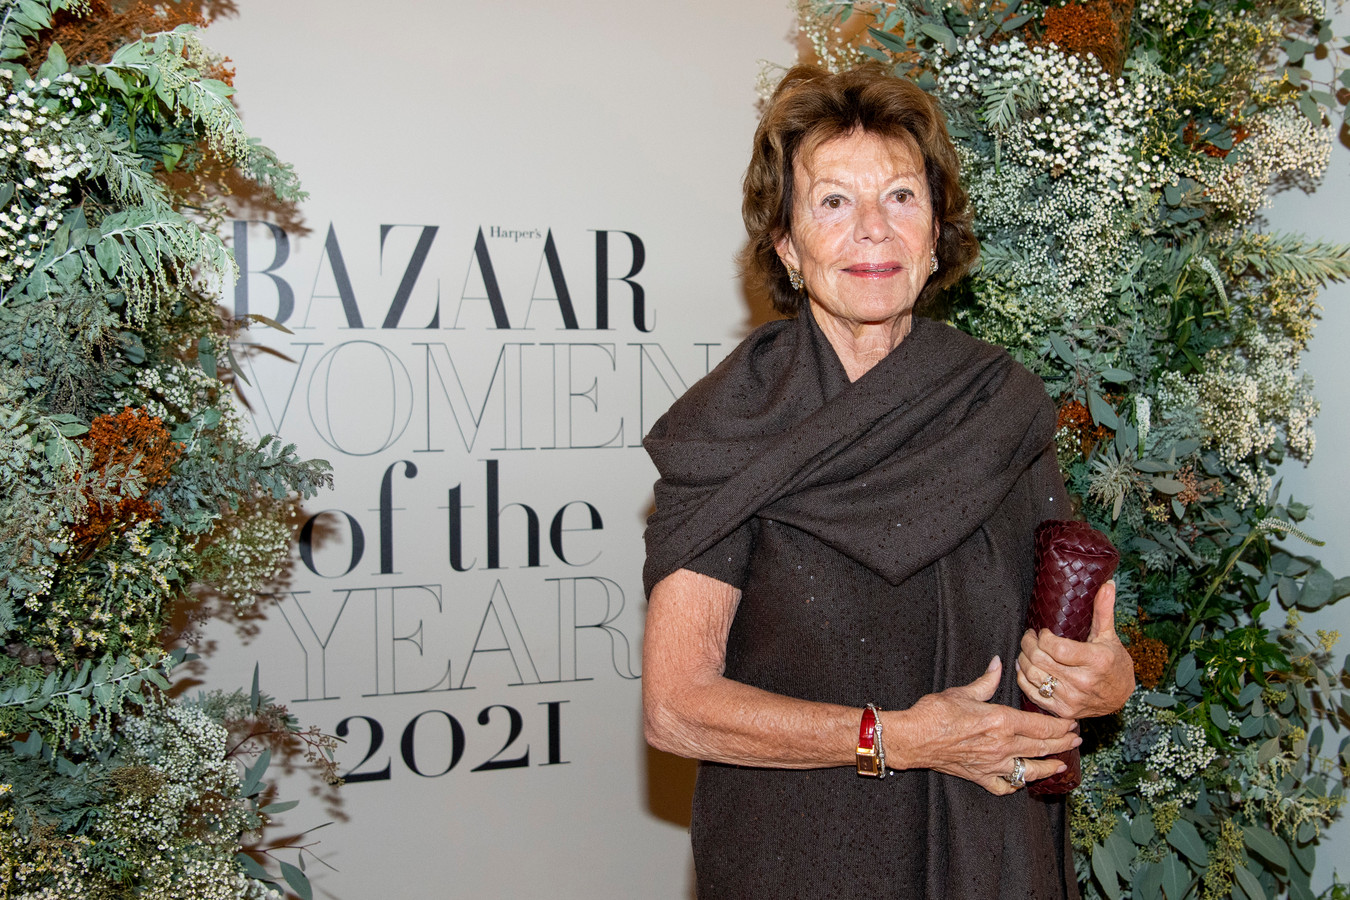 Neelie Kroes aanwezig bij Harper's Bazaar Women of the Year 2021 in de Circle Gallery Amsterdam, november 2021.